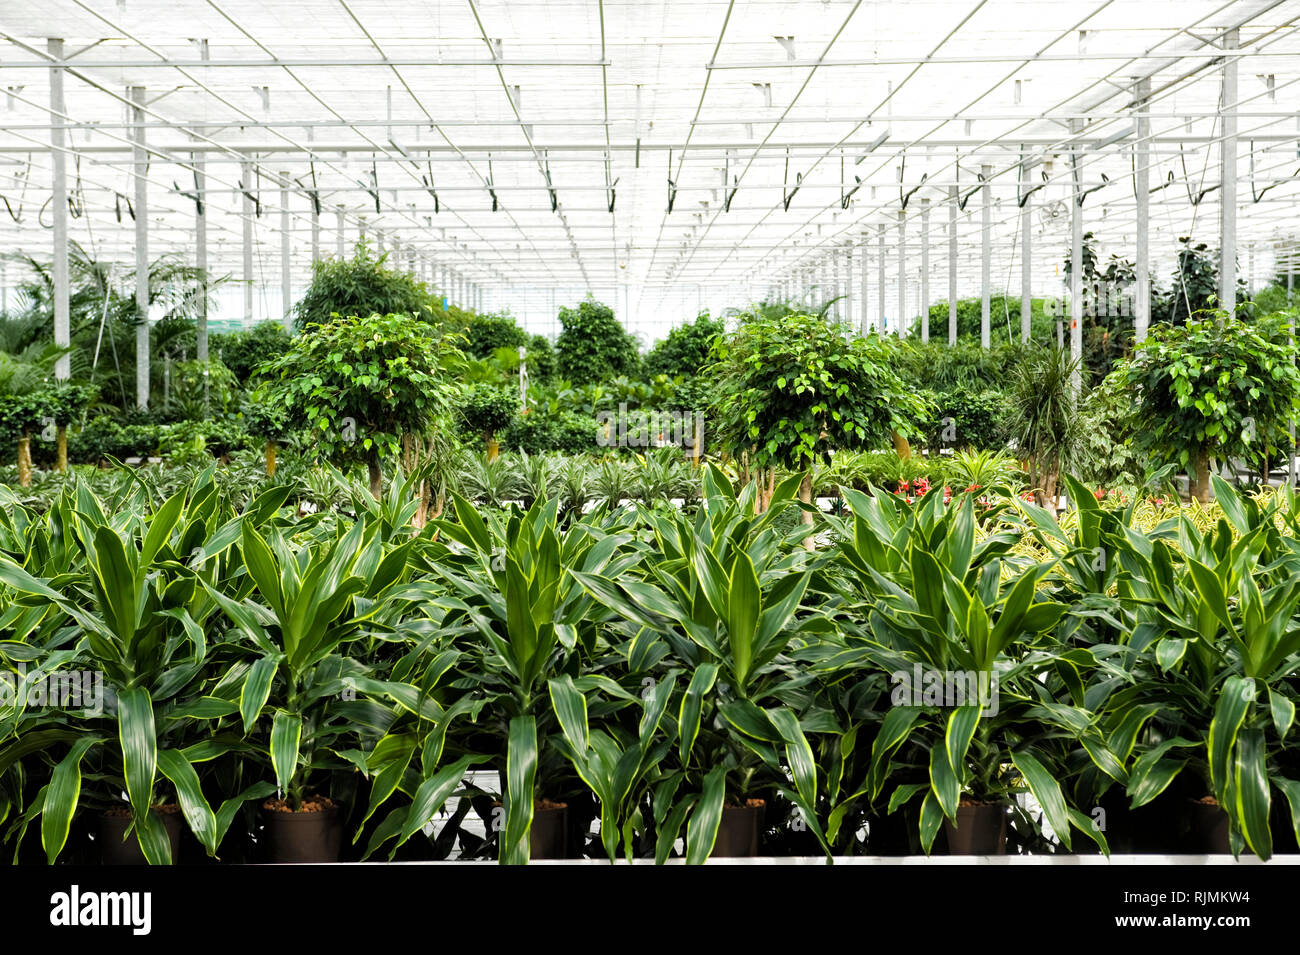 Gewaechshaus fuer Hydrokulturpflanzen das selber Energie erzeugt. Im Vordergrund stehen Dracaena Pflanzen. Stockfoto